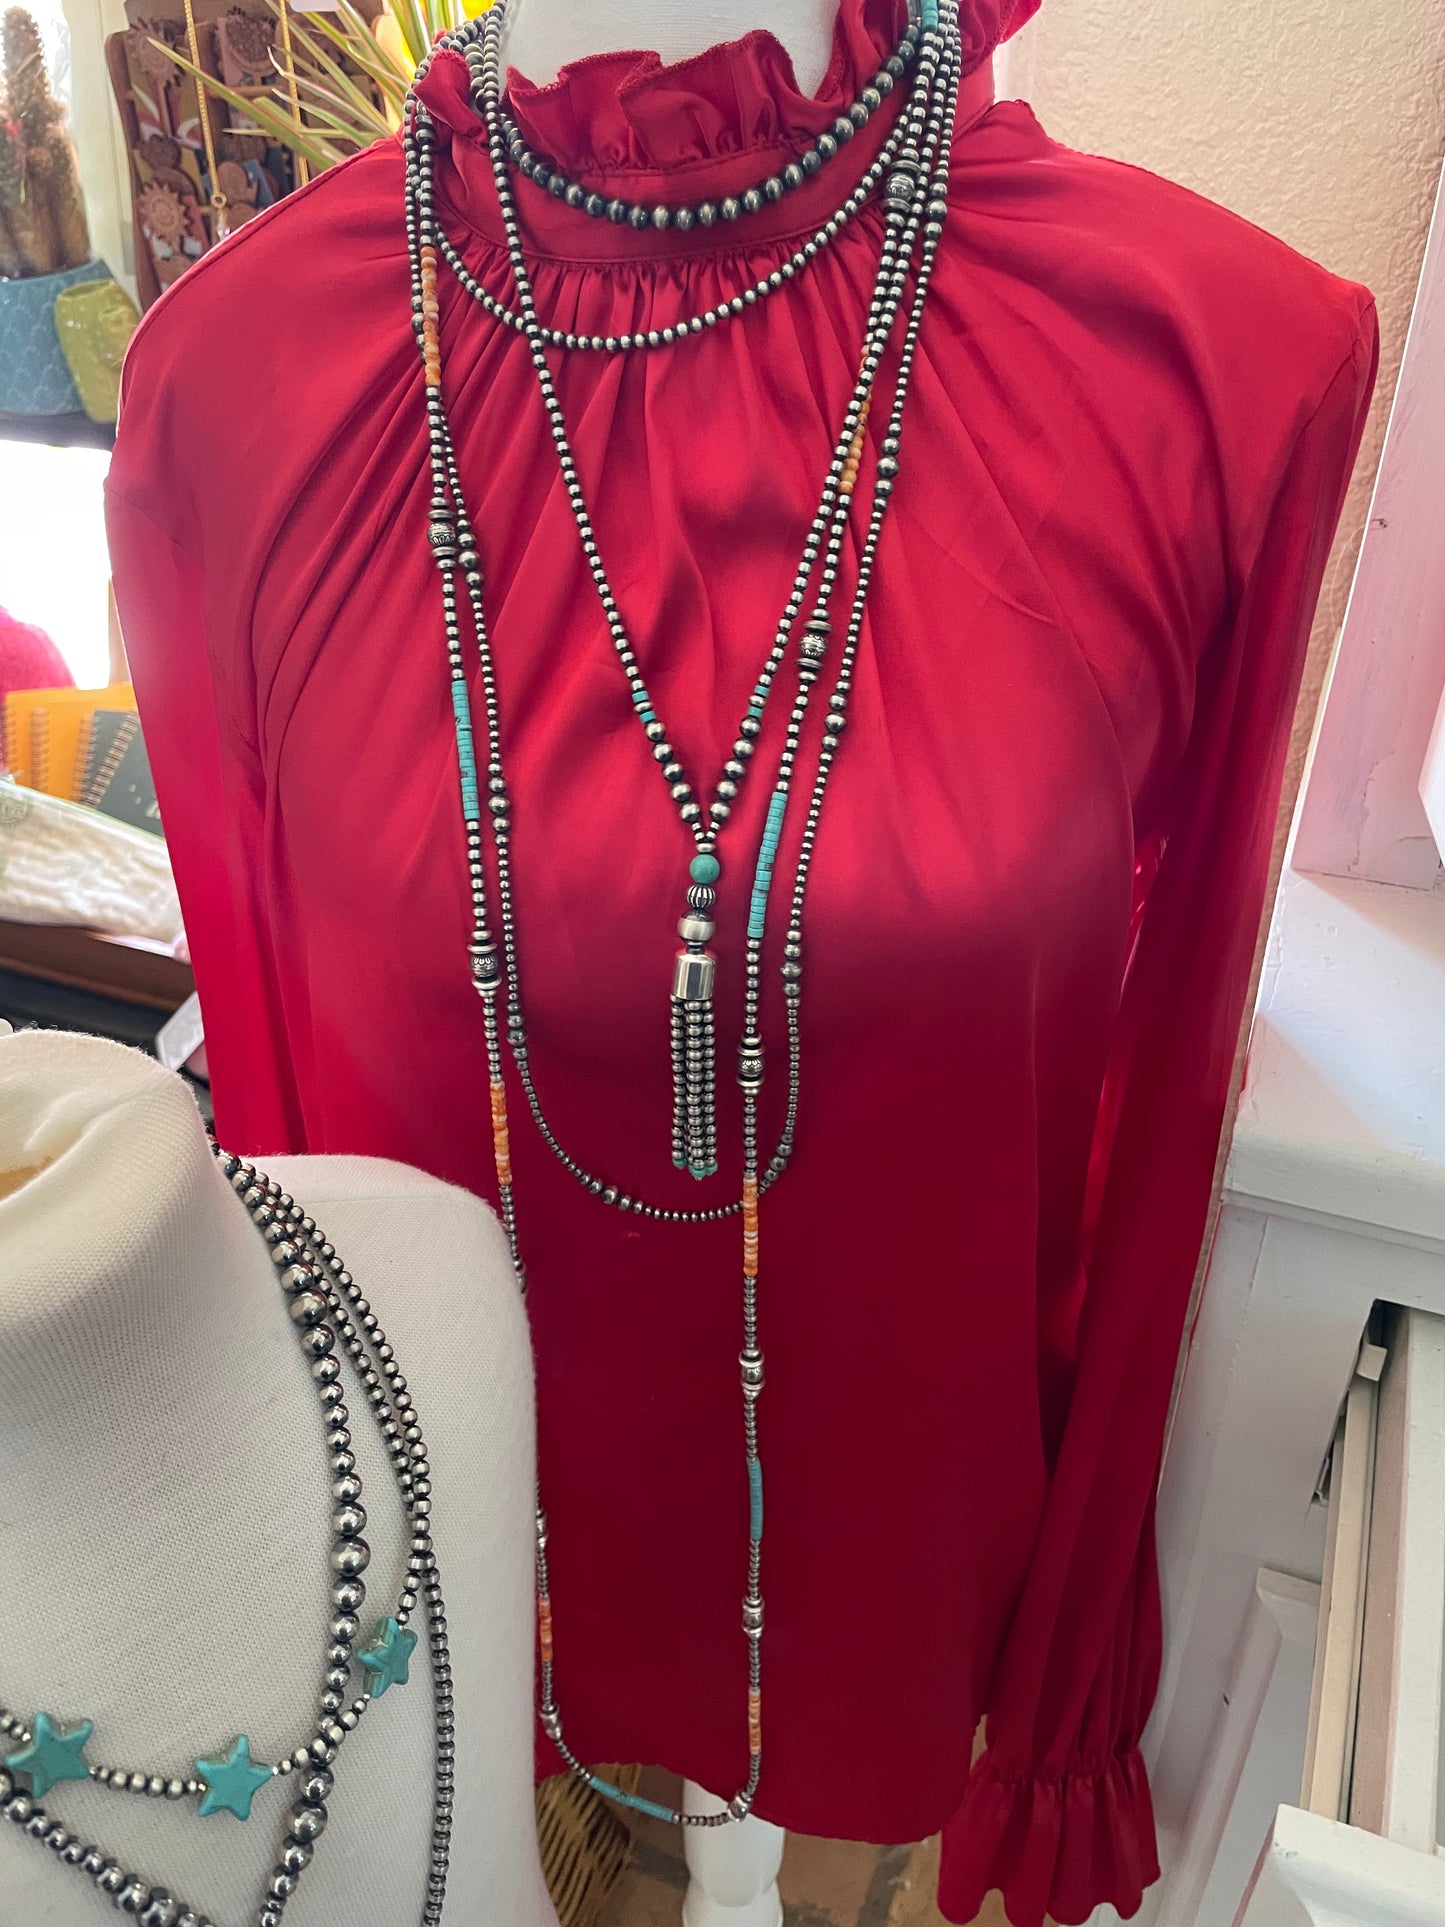 60” Multicolor with Navajo Pearls Necklace